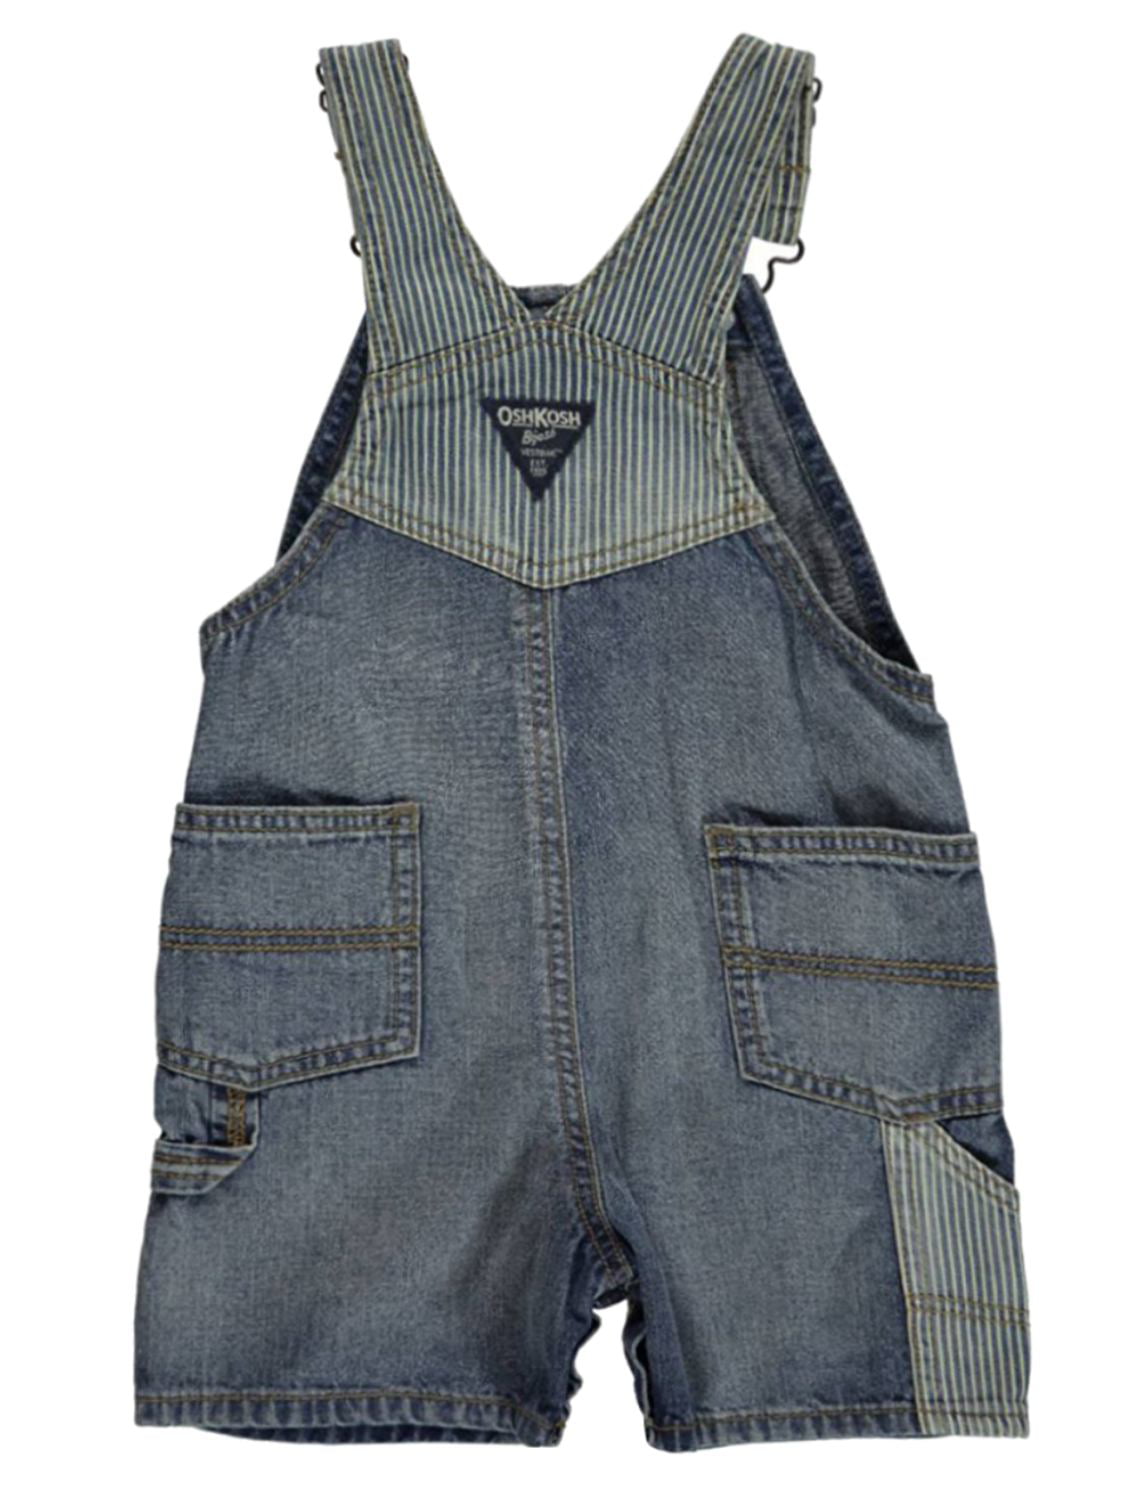 Blue Size 3-24 Months Ivory Oshkosh Bgosh Baby Boys Hickory Striped Soft Denim Knit Shortalls with Adjustable Straps